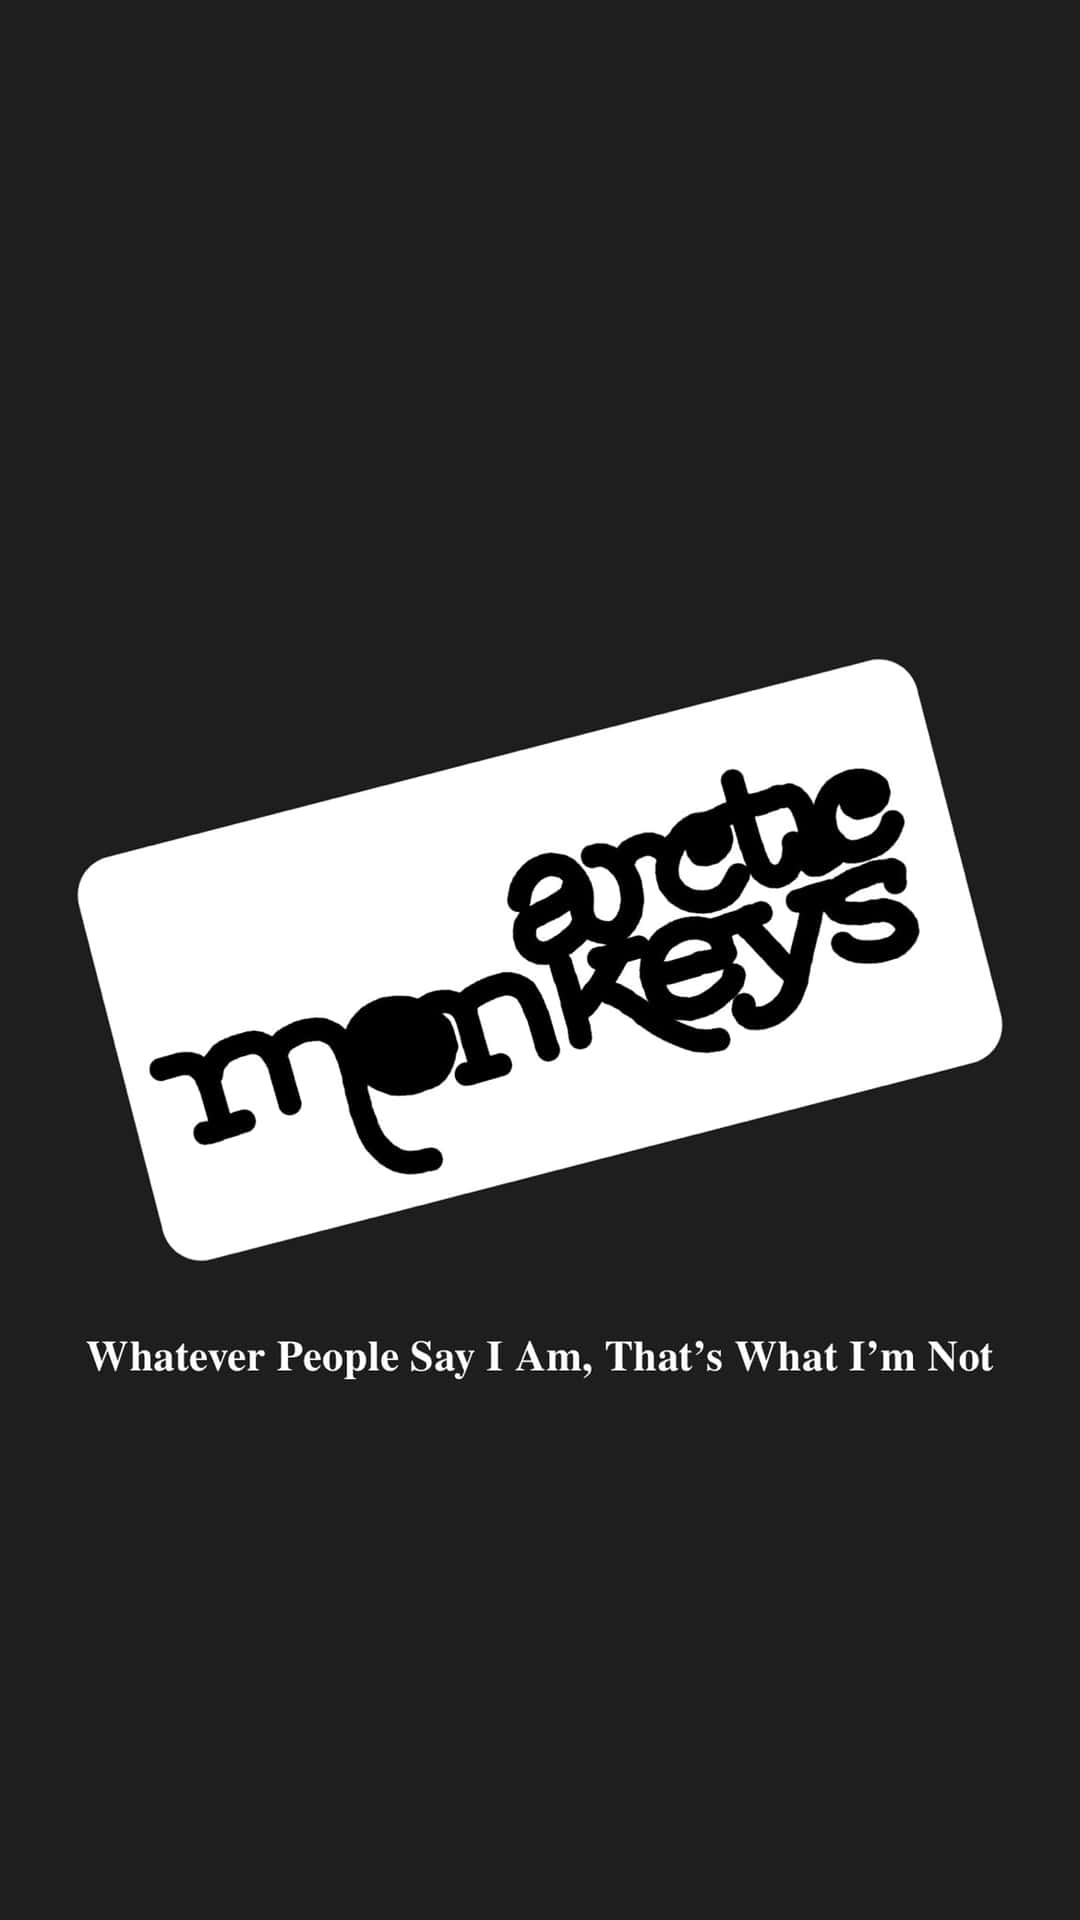 Arctic Monkeys Album Cover Background